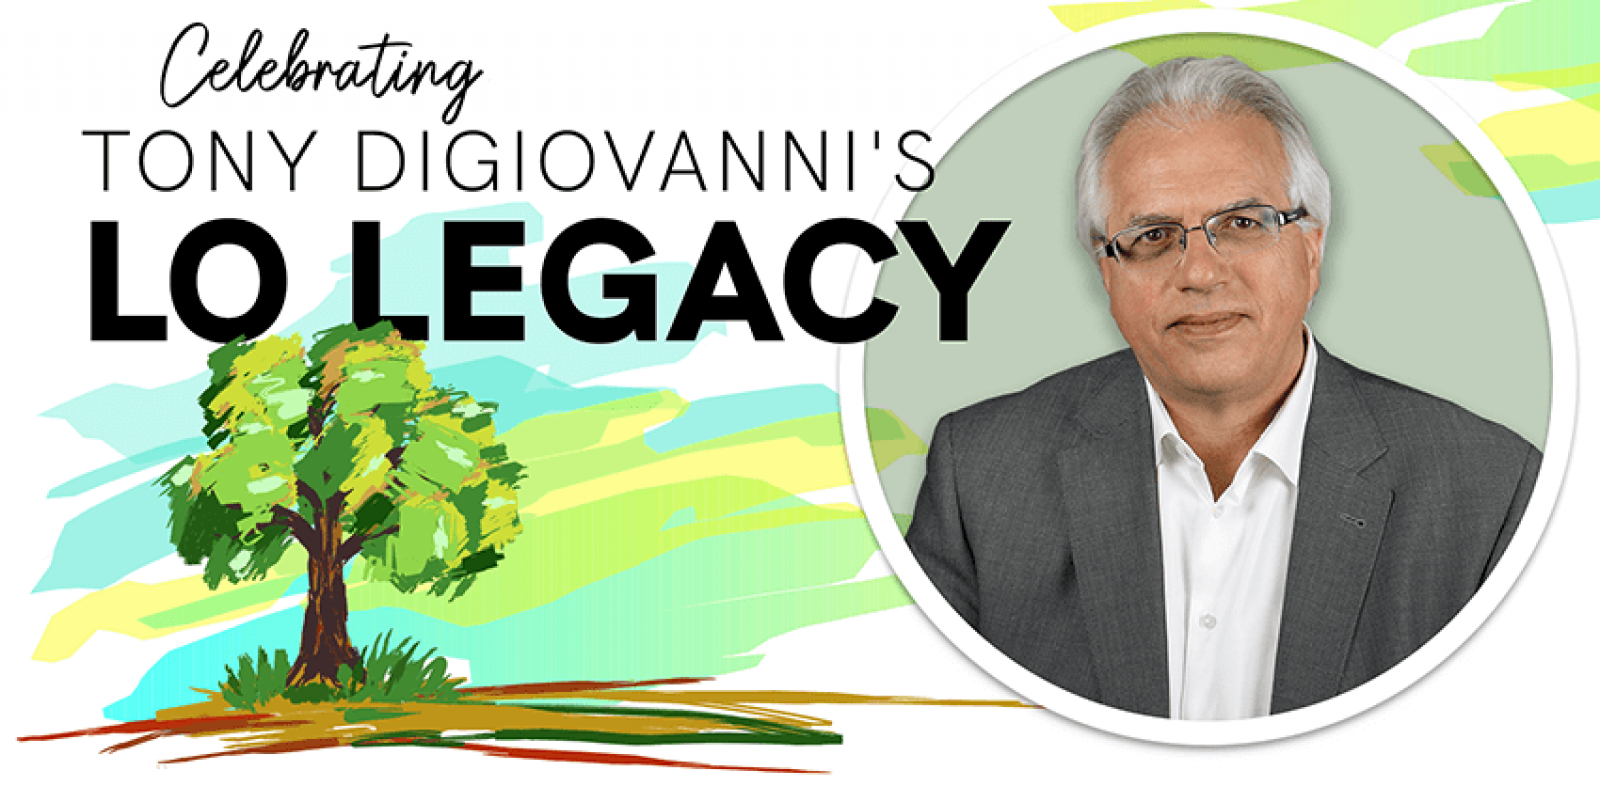 Celebrating Tony DiGiovanni’s legacy